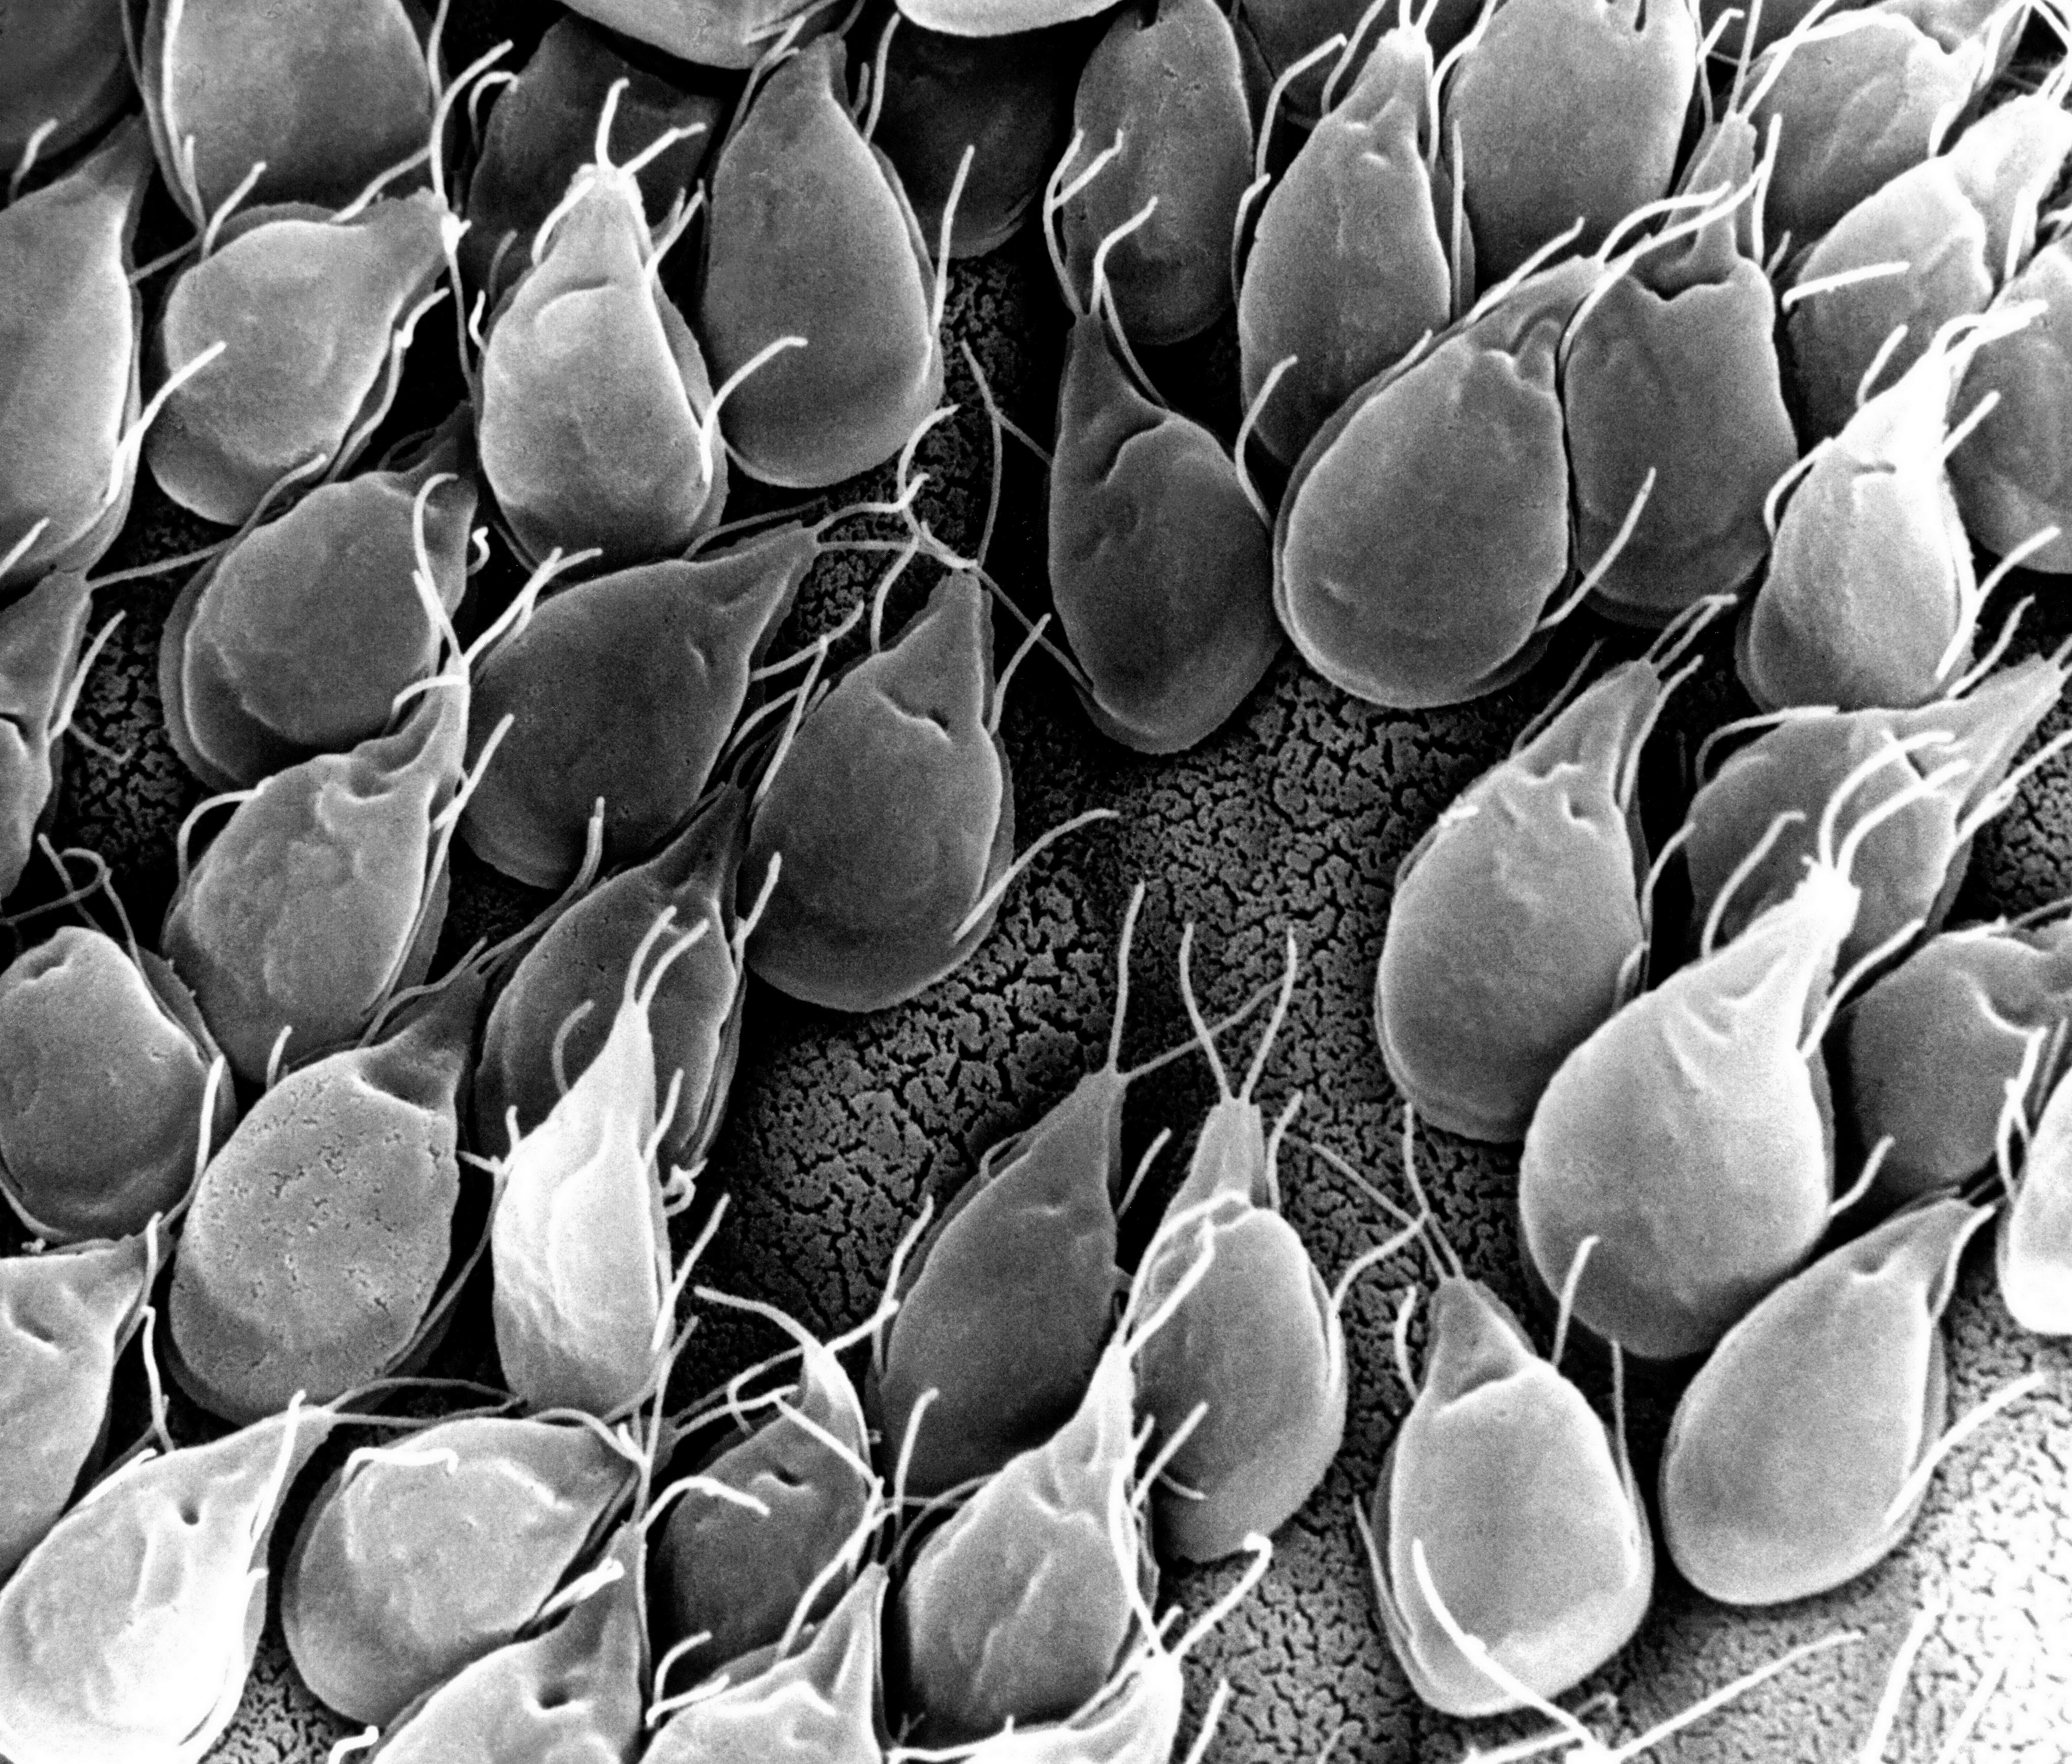 Imagini de protozoare de giardia Infectii Intestinale cu Protozoare si Tricomonaza